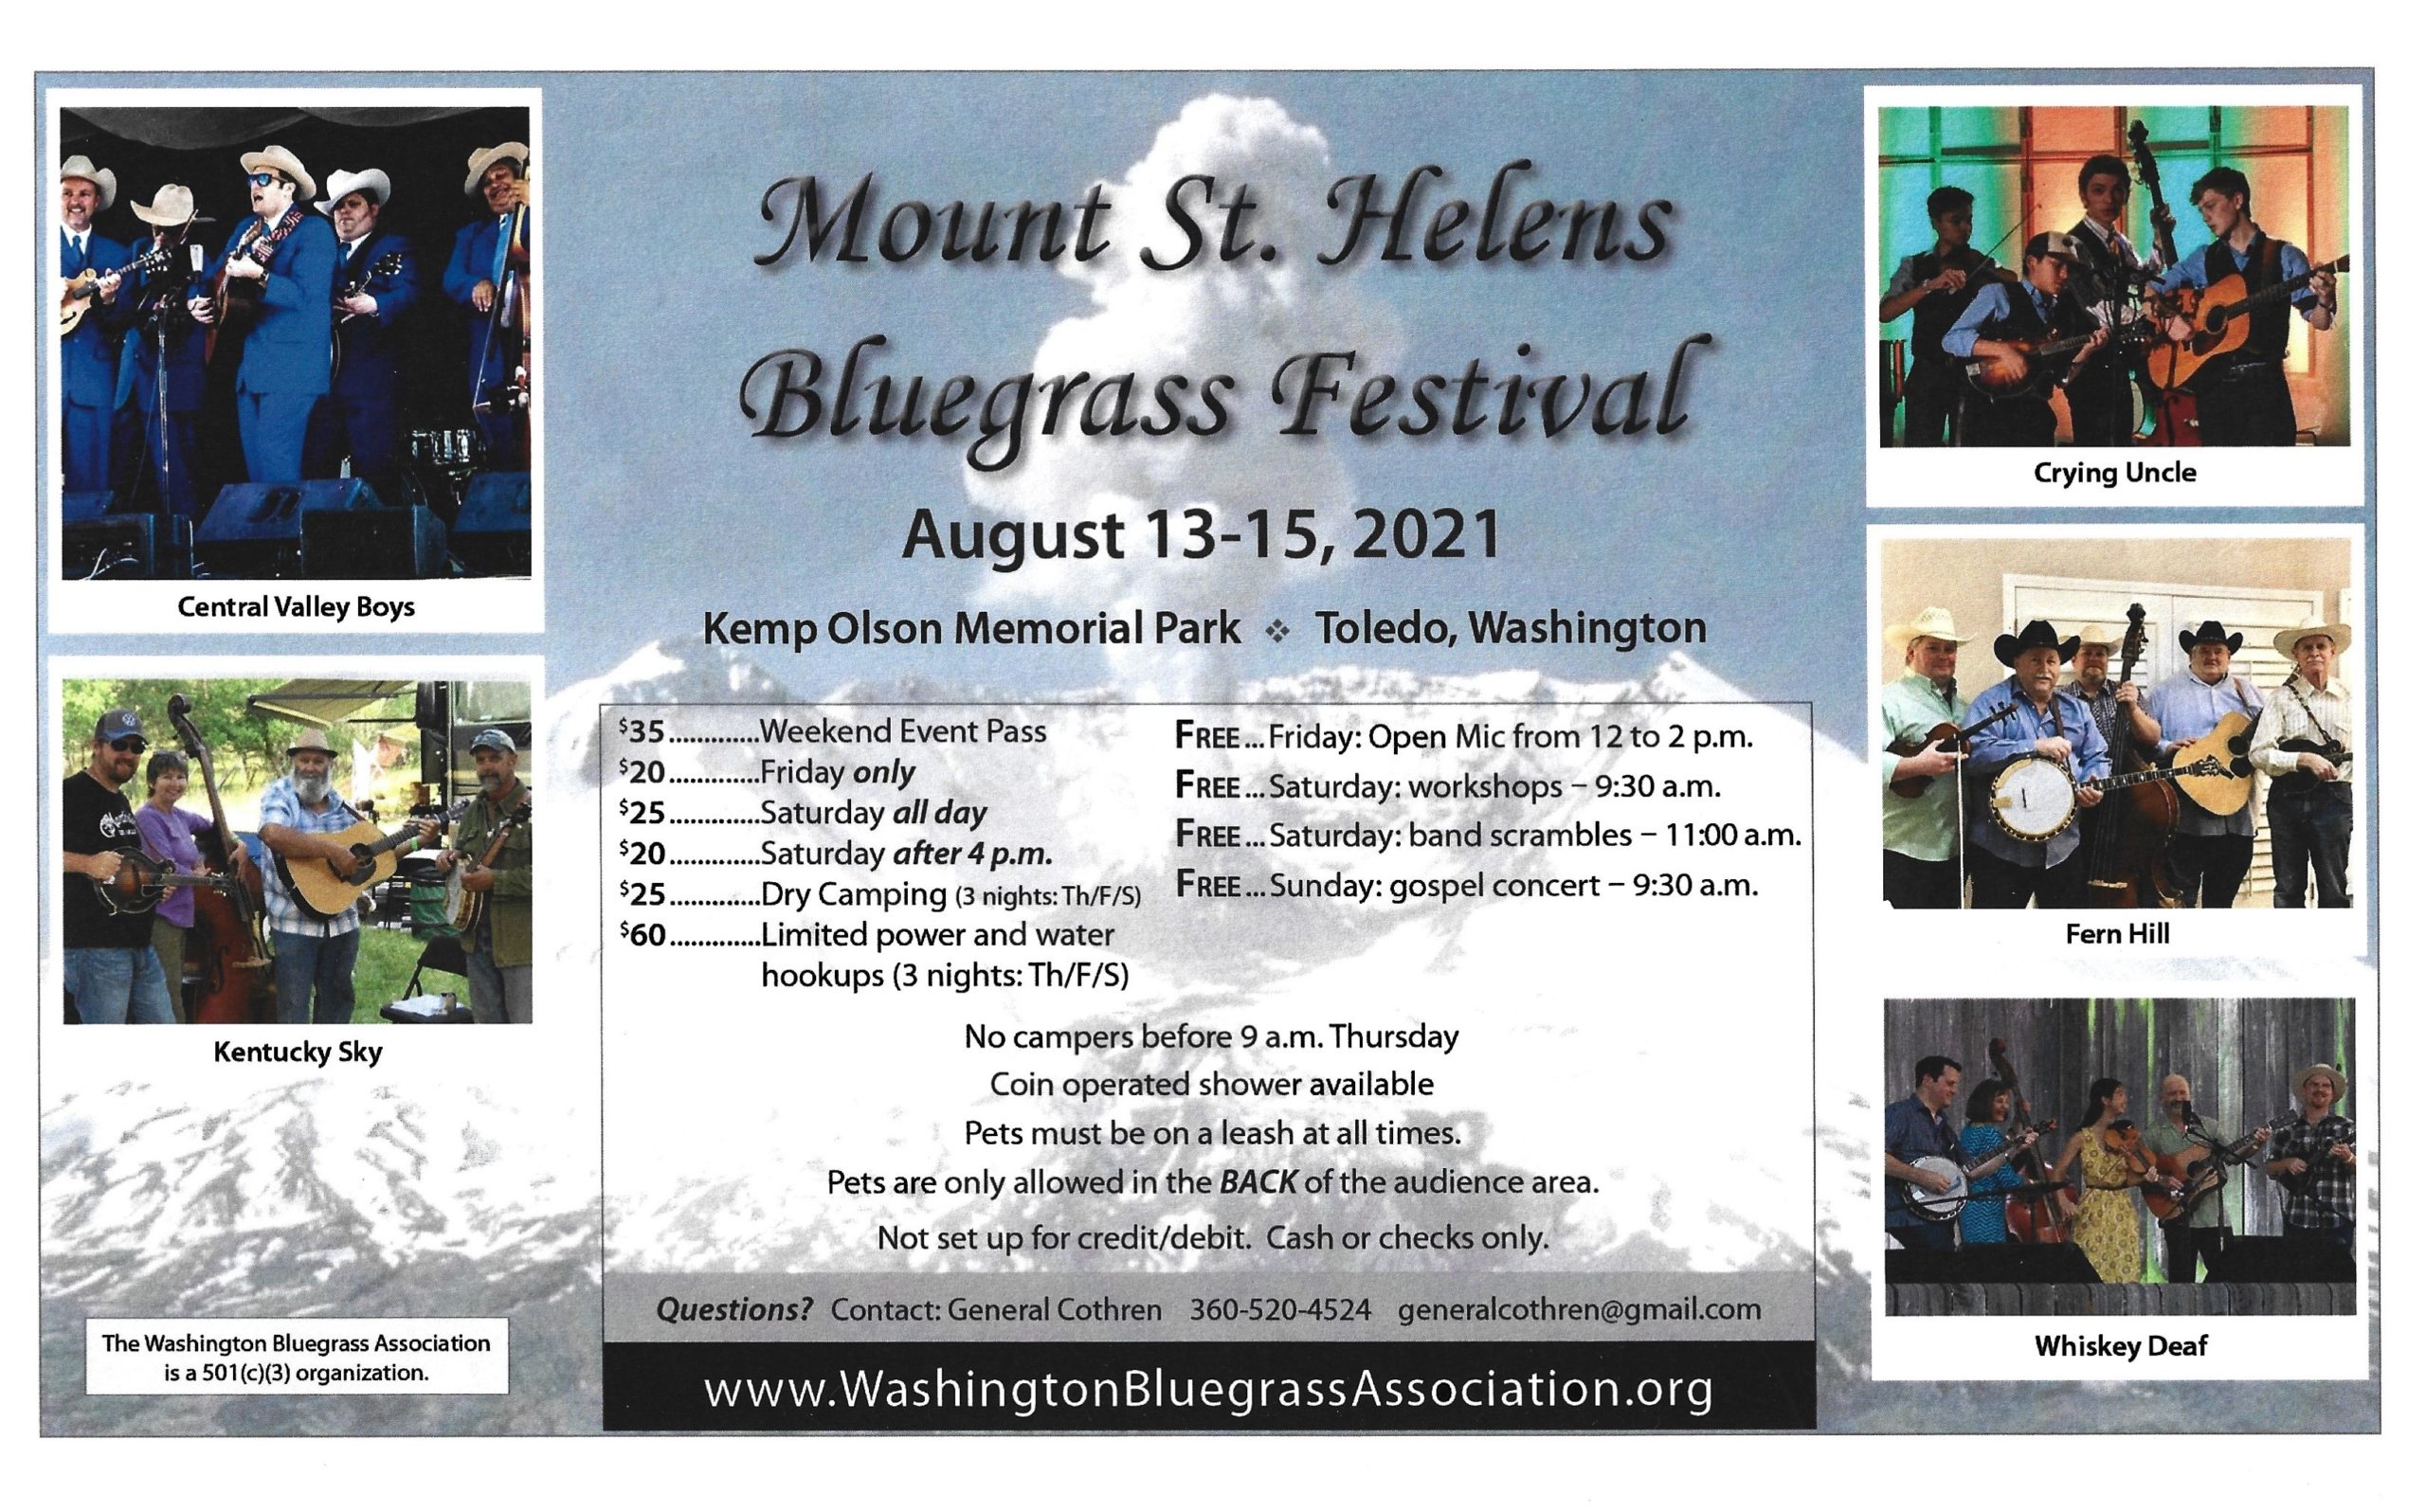 Mt. St. Helens Bluegrass Festival Bluegrass Today